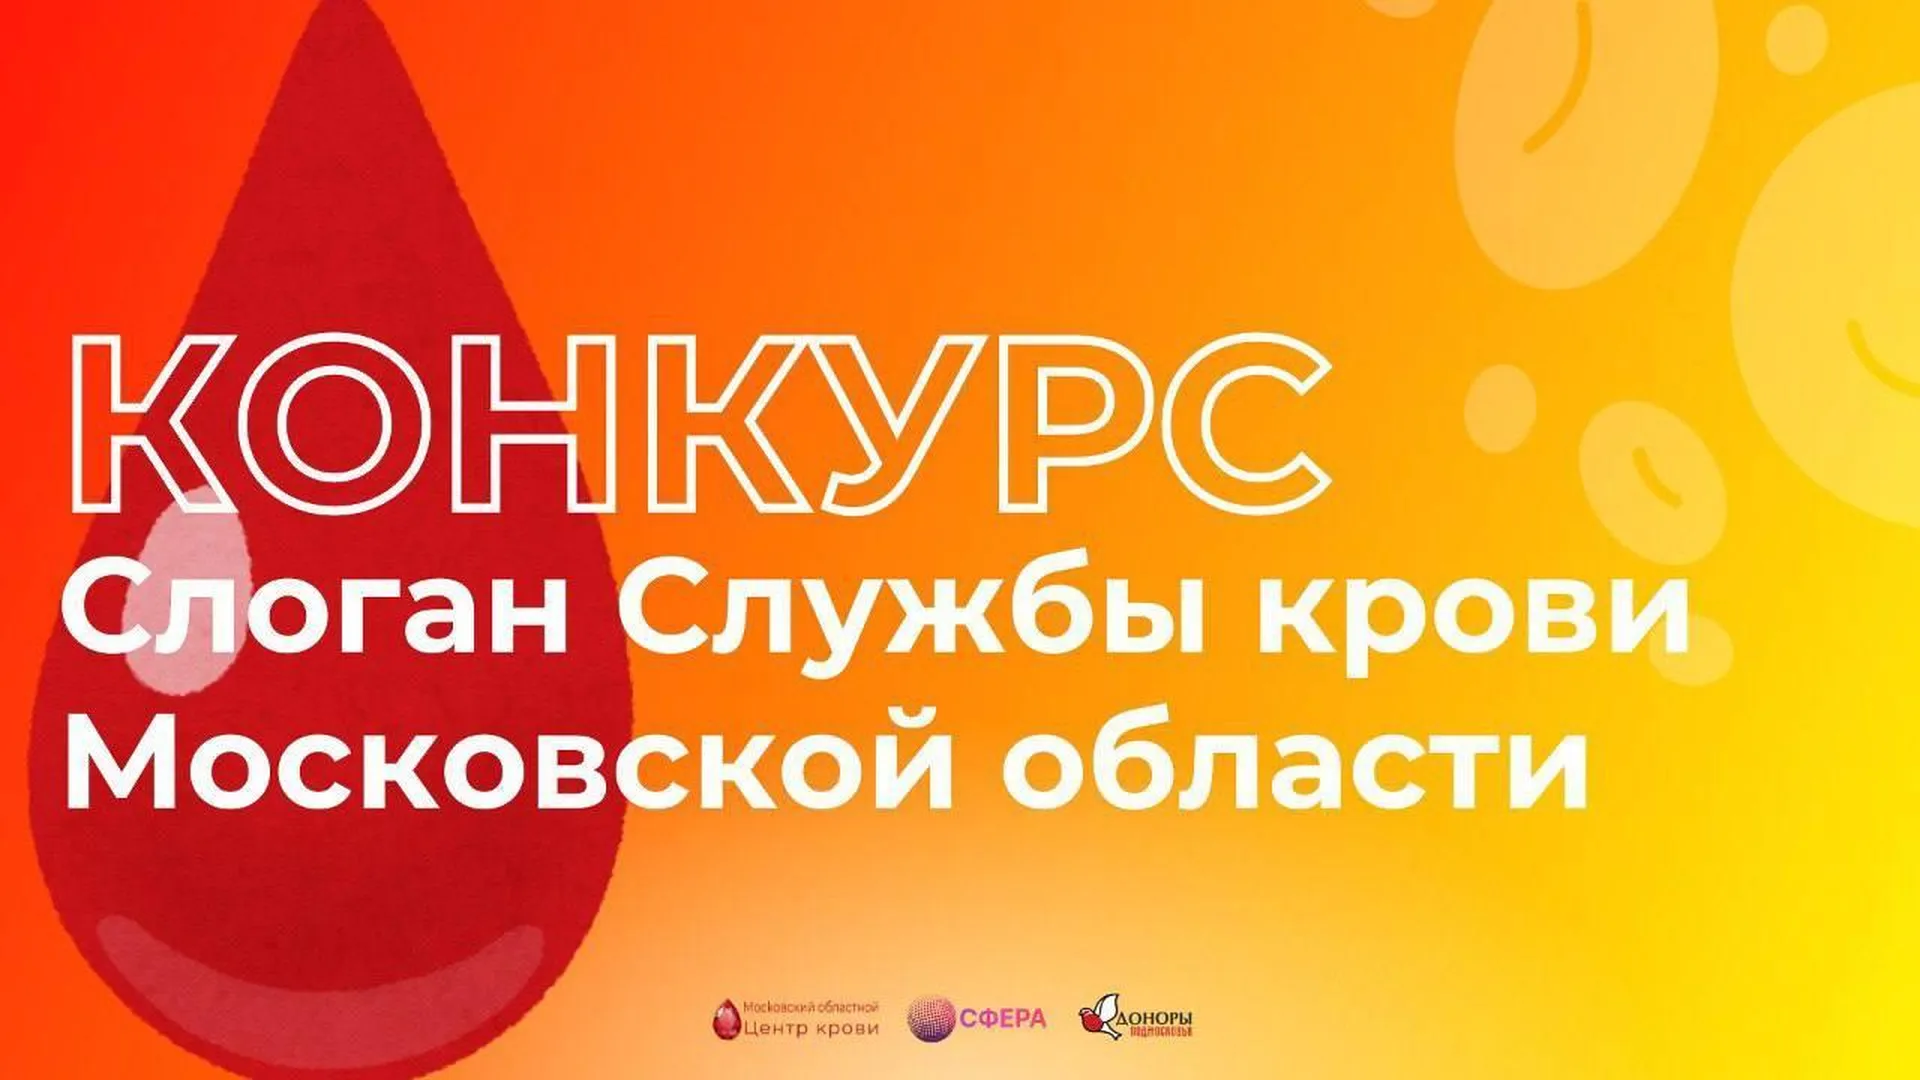 Служба крови Московской области проводит конкурс слоганов